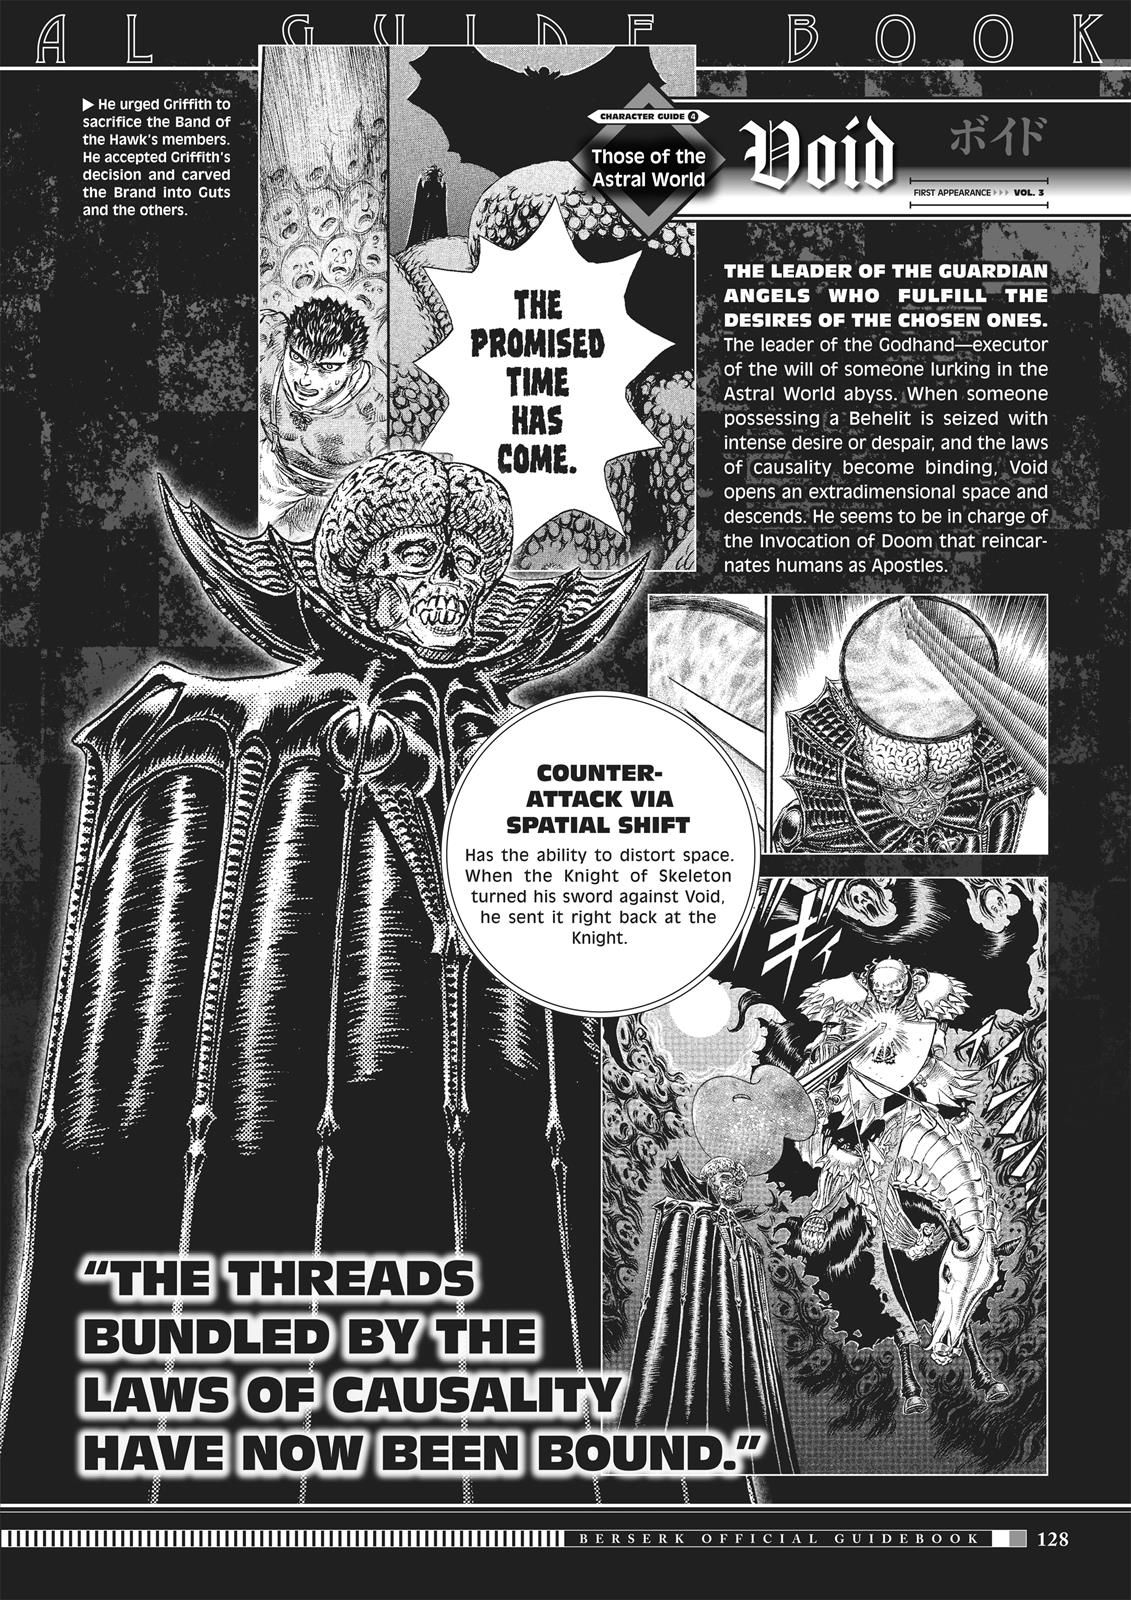 Berserk Manga Chapter 350.5 image 126